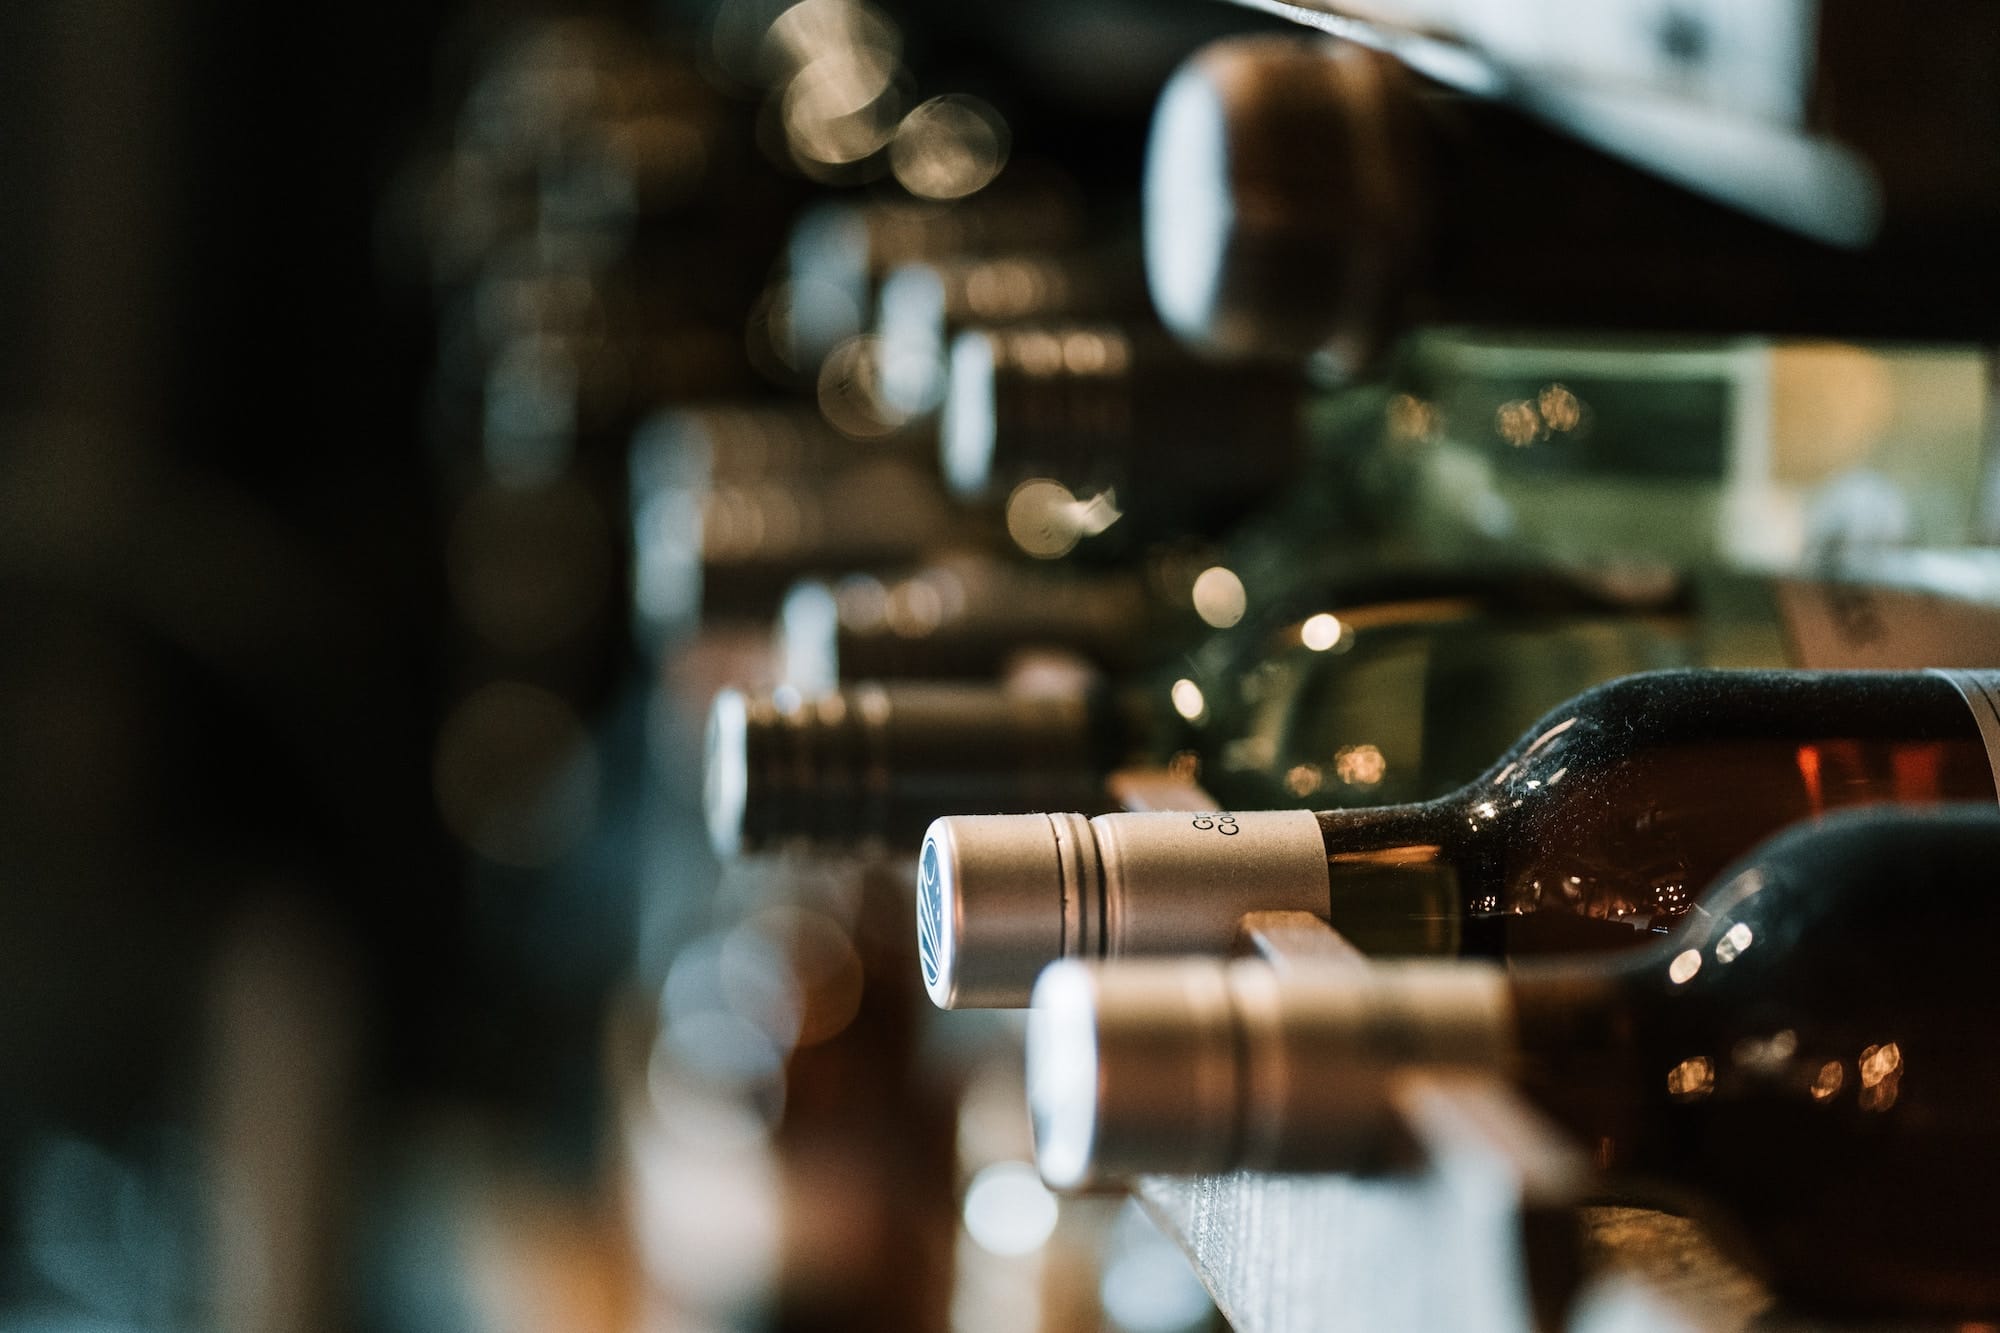 Flaschen alkoholfreier Weinvarianten liegen in einem Weinregal